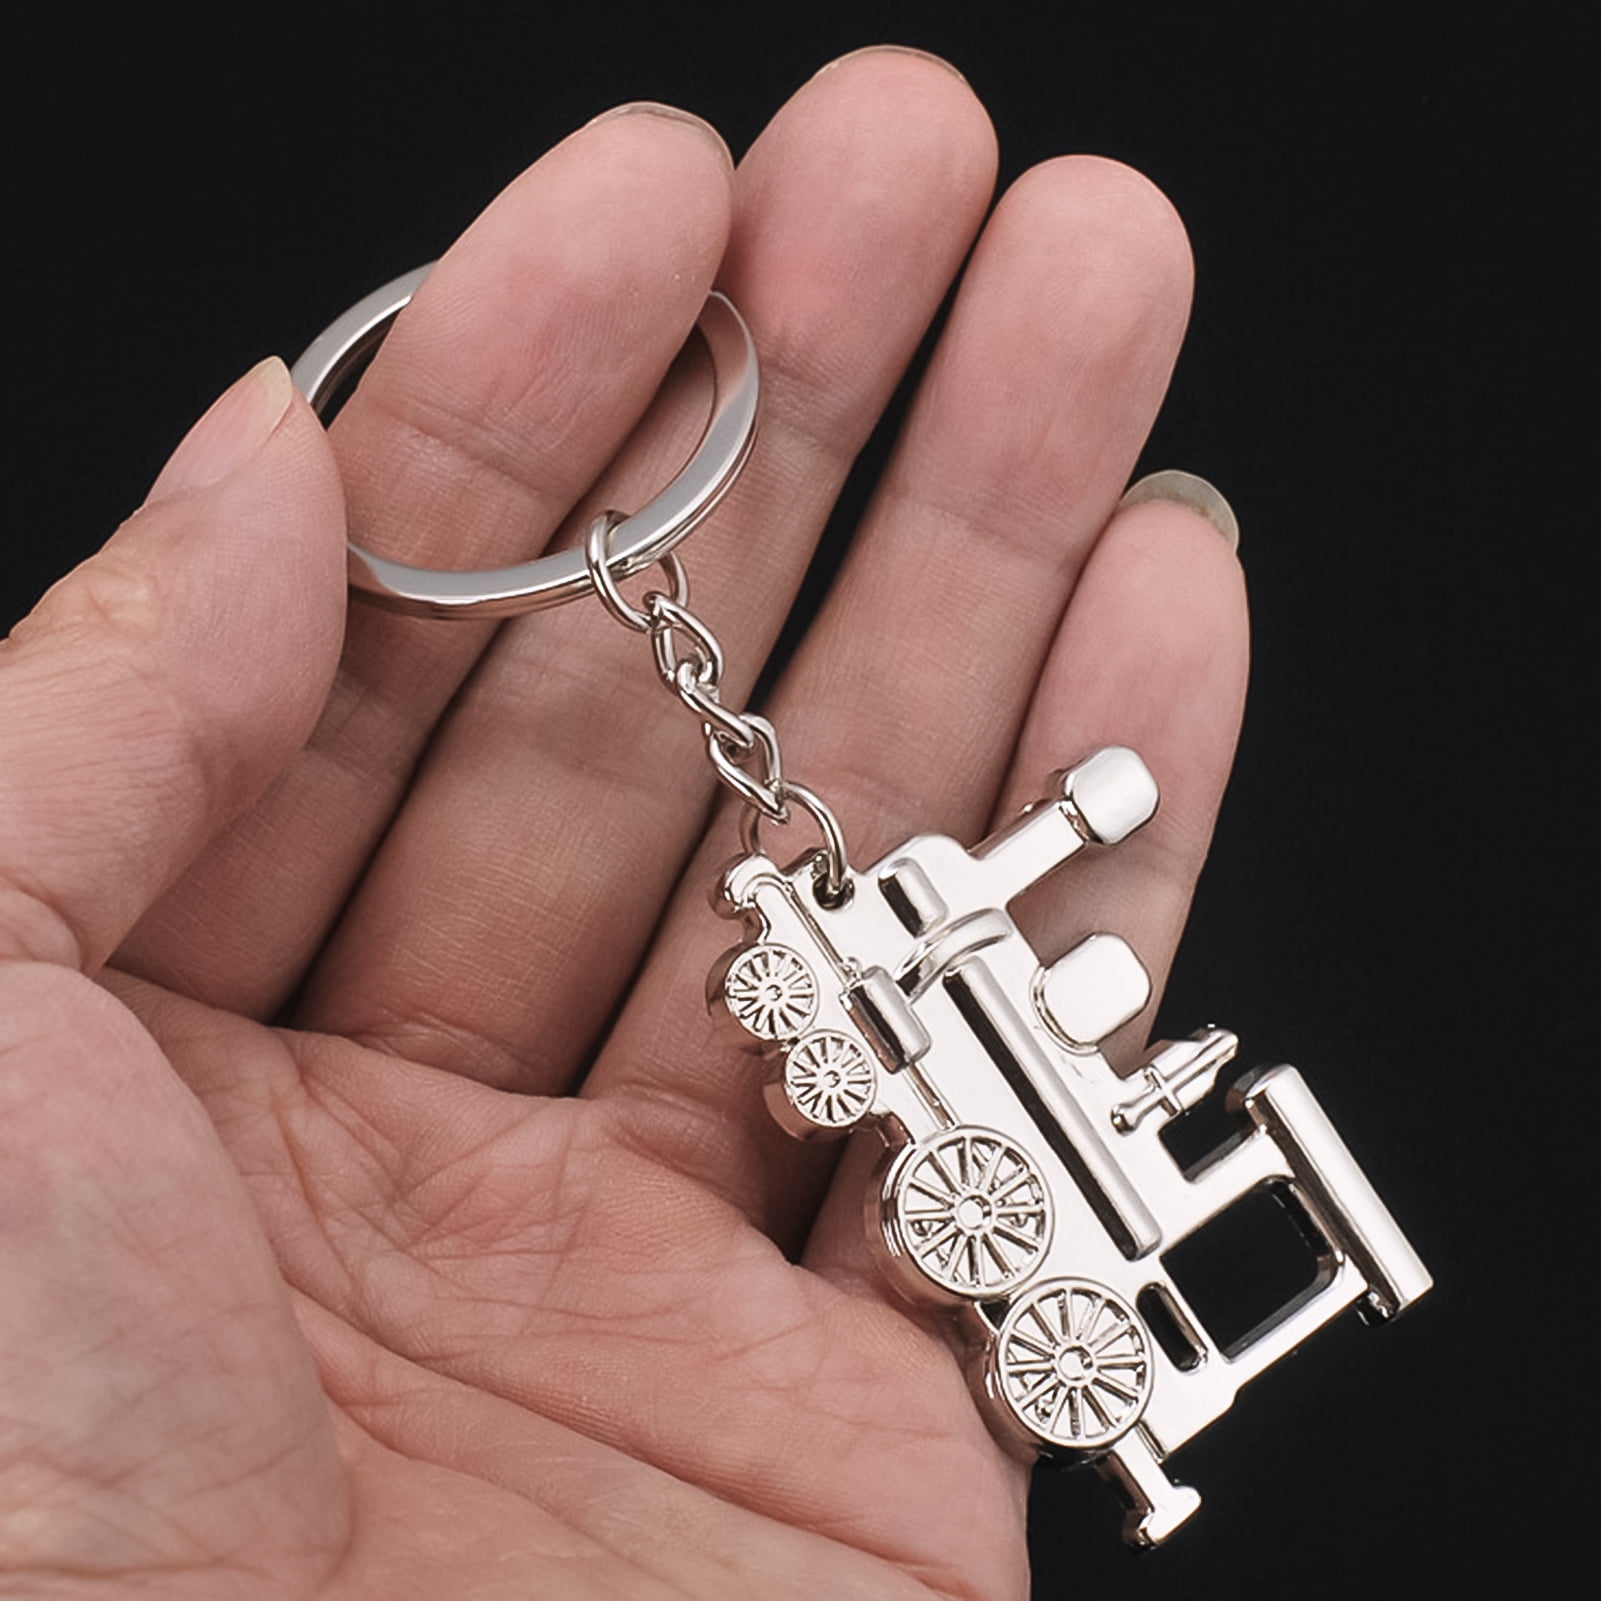 Heart Crystal Rhinestone Handbag Charm Pendant Bag Keyring Key Chain Ring  fQ xh